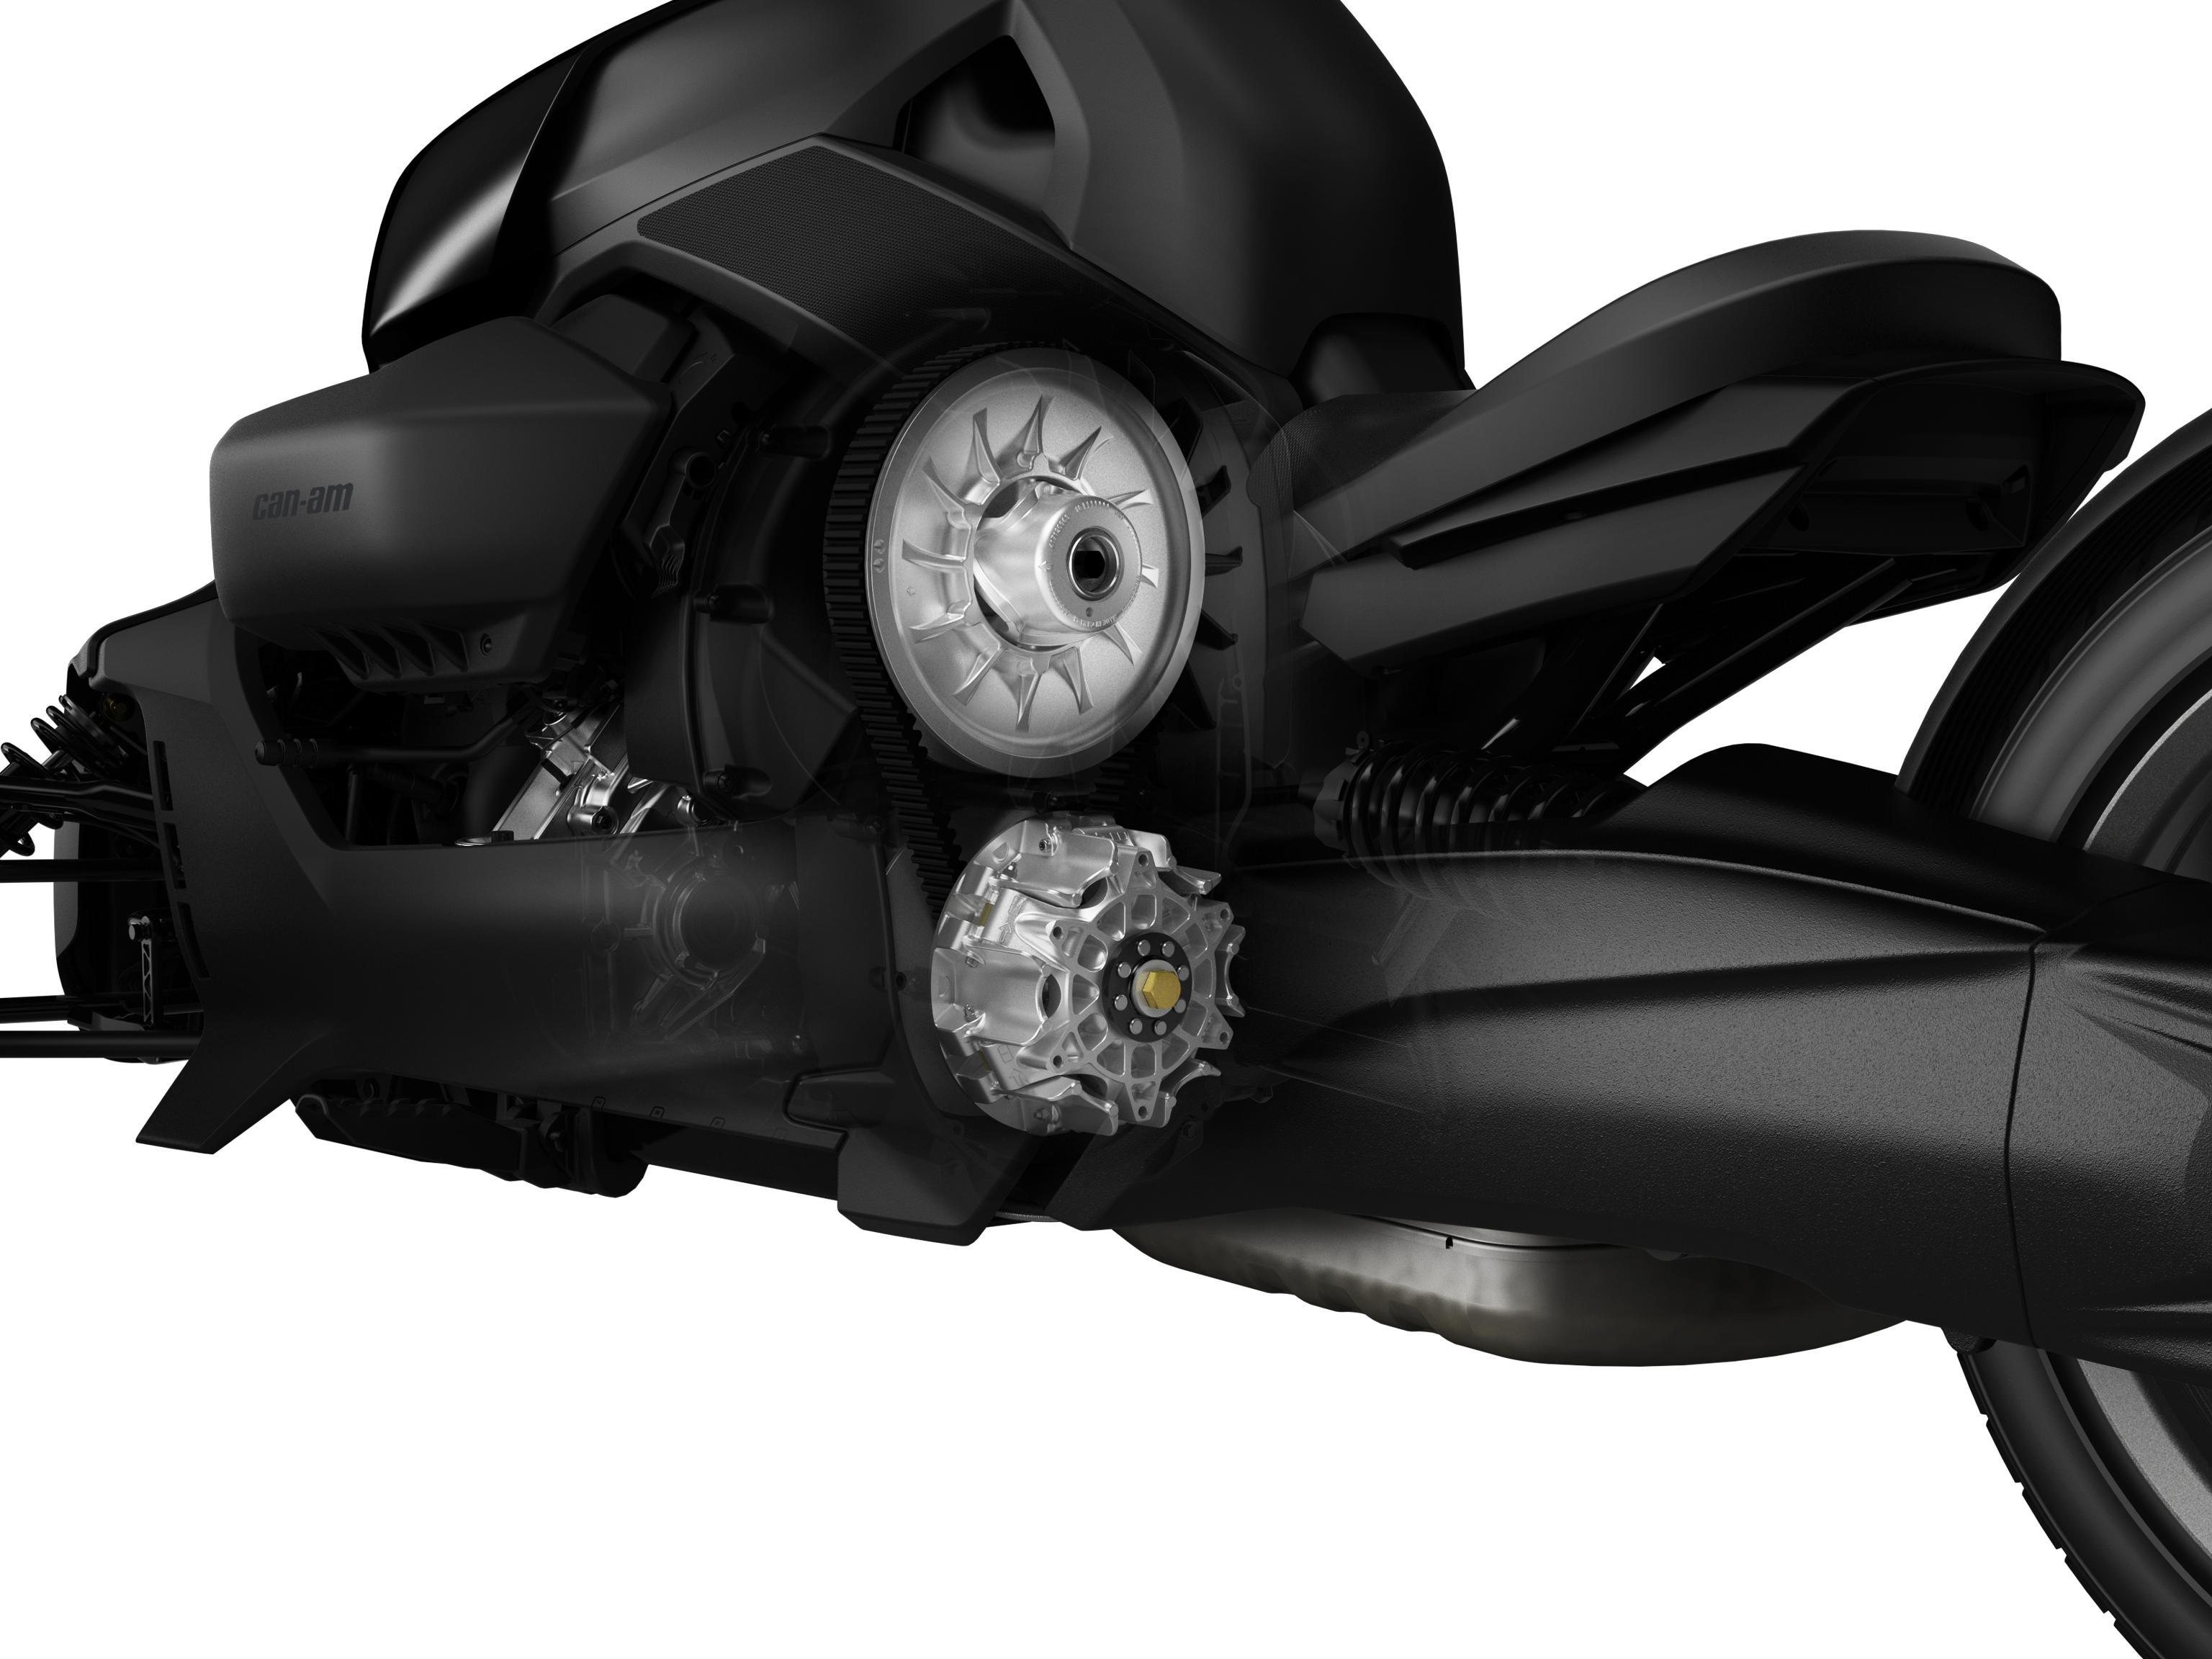 Automatická převodovka modelu Can-Am Ryker poskytuje bezproblémové řazení twist-and-go, které je navrženo tak, aby výkon vozidla a spotřeba paliva byly v dokonalé rovnováze, a vy jste tak mohli myslet na cestu a dobrodružství, které vás čeká.